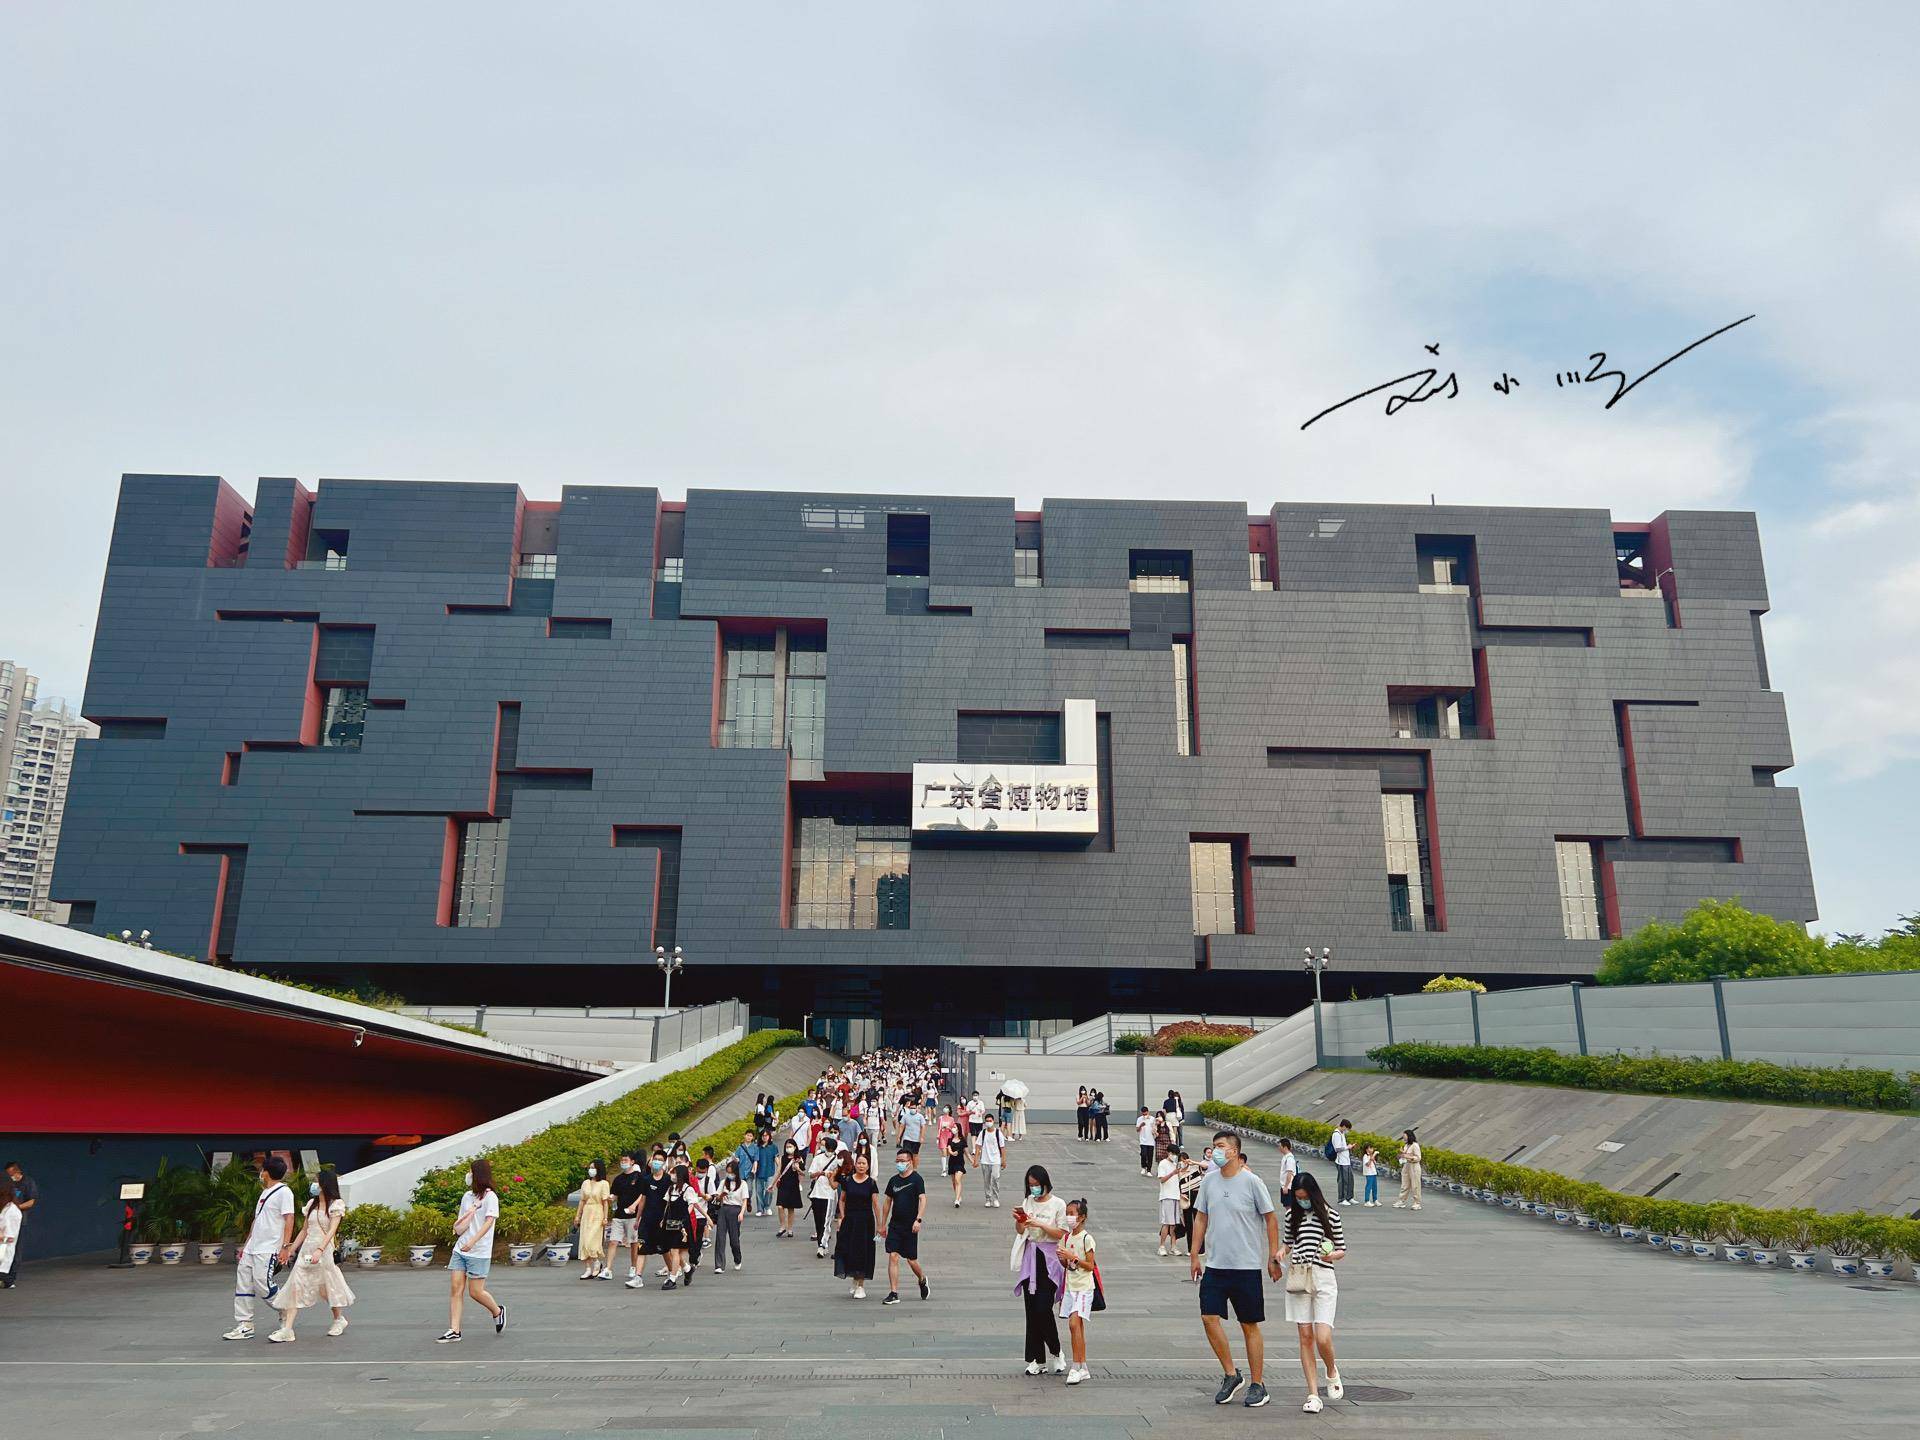 实拍广东省博物馆，广州新地标之一，因外形奇特而成为网红打卡点